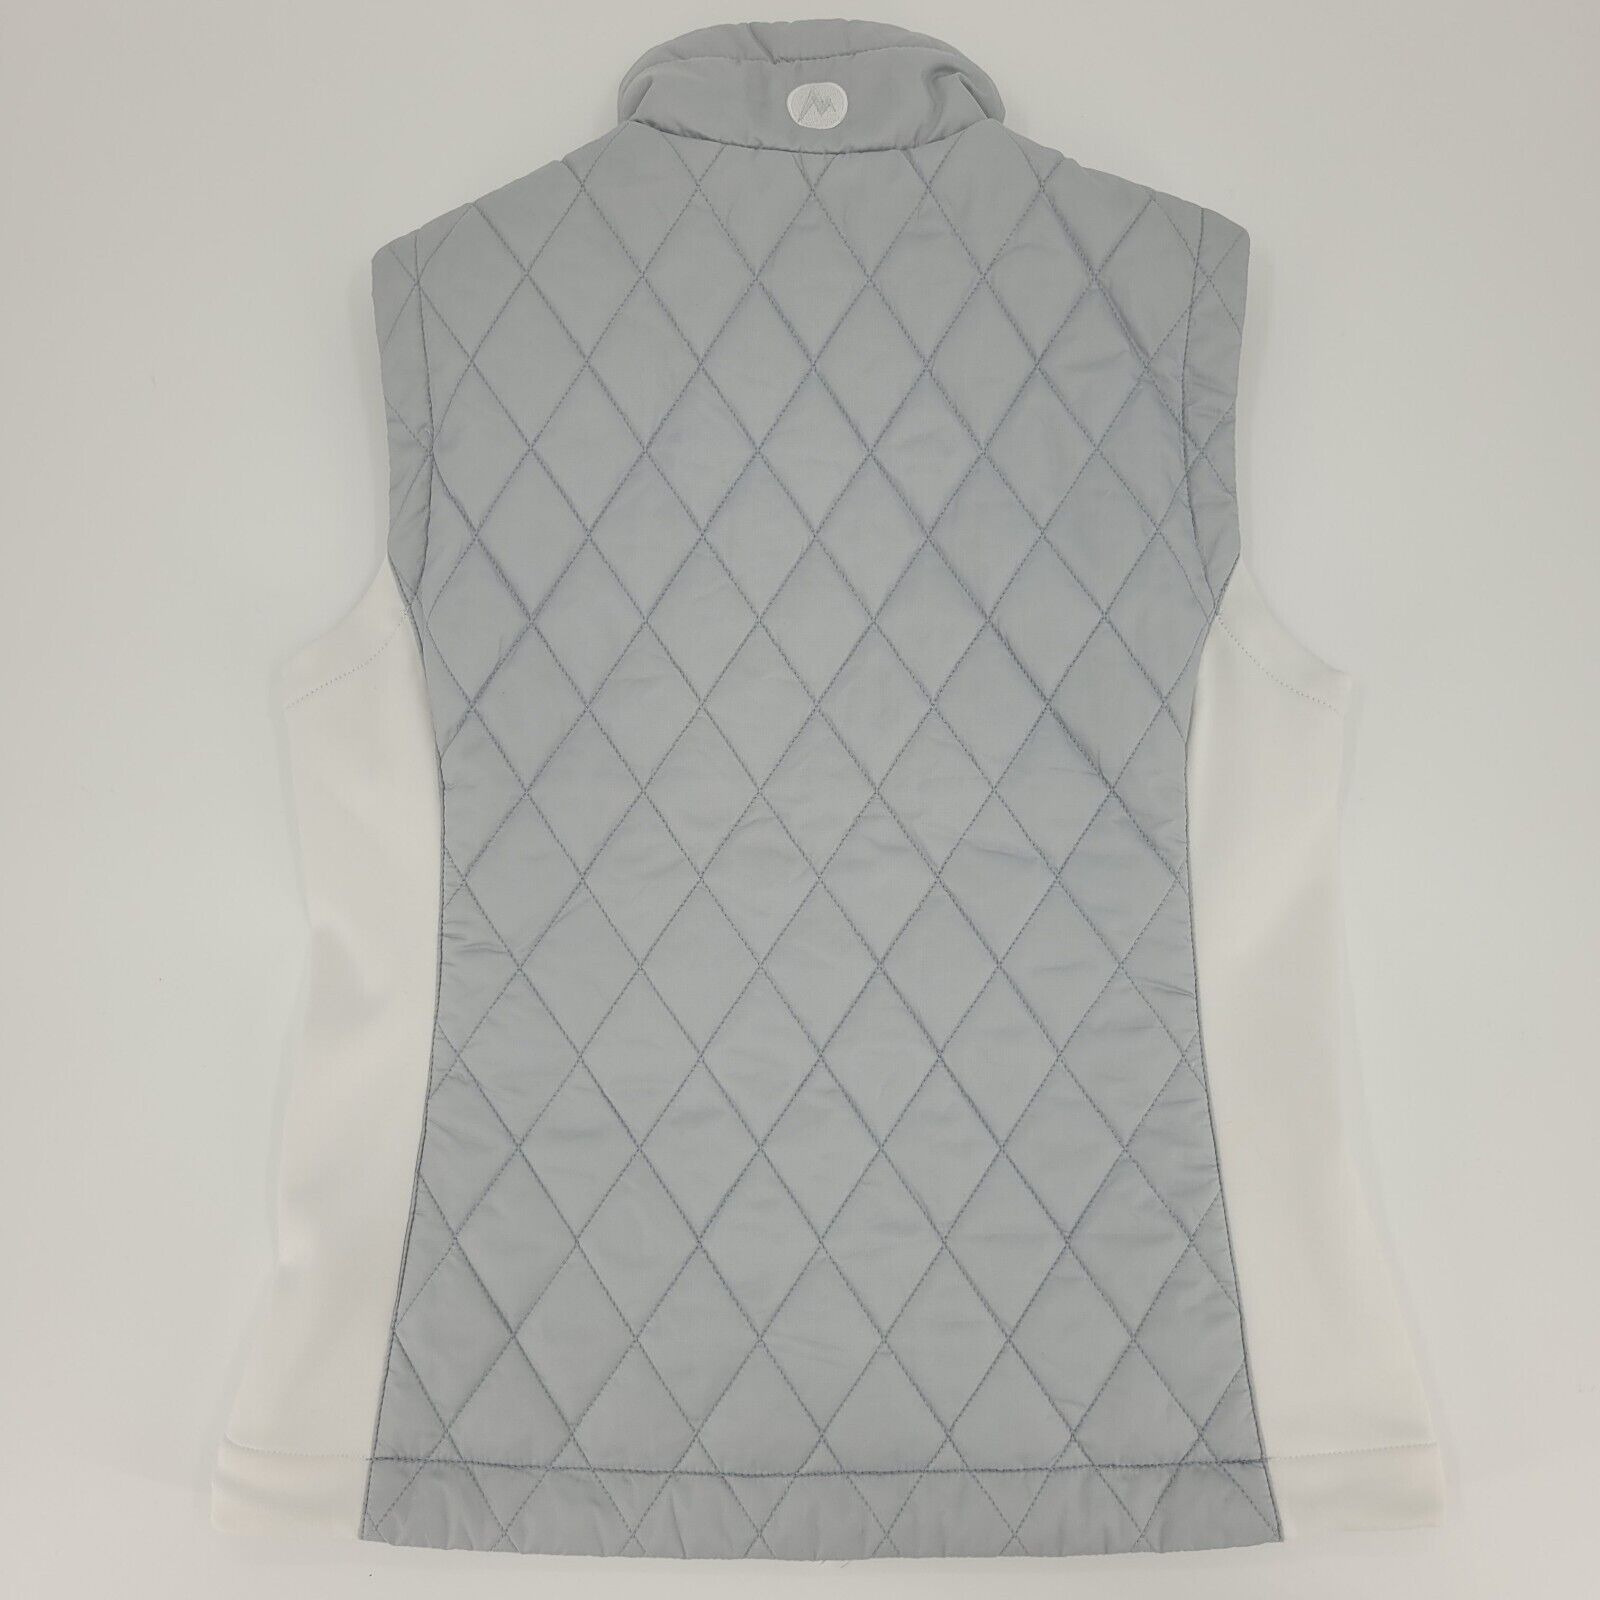 Marmot Vest Size Small Kitzbuhel Quilted Gray Whi… - image 5